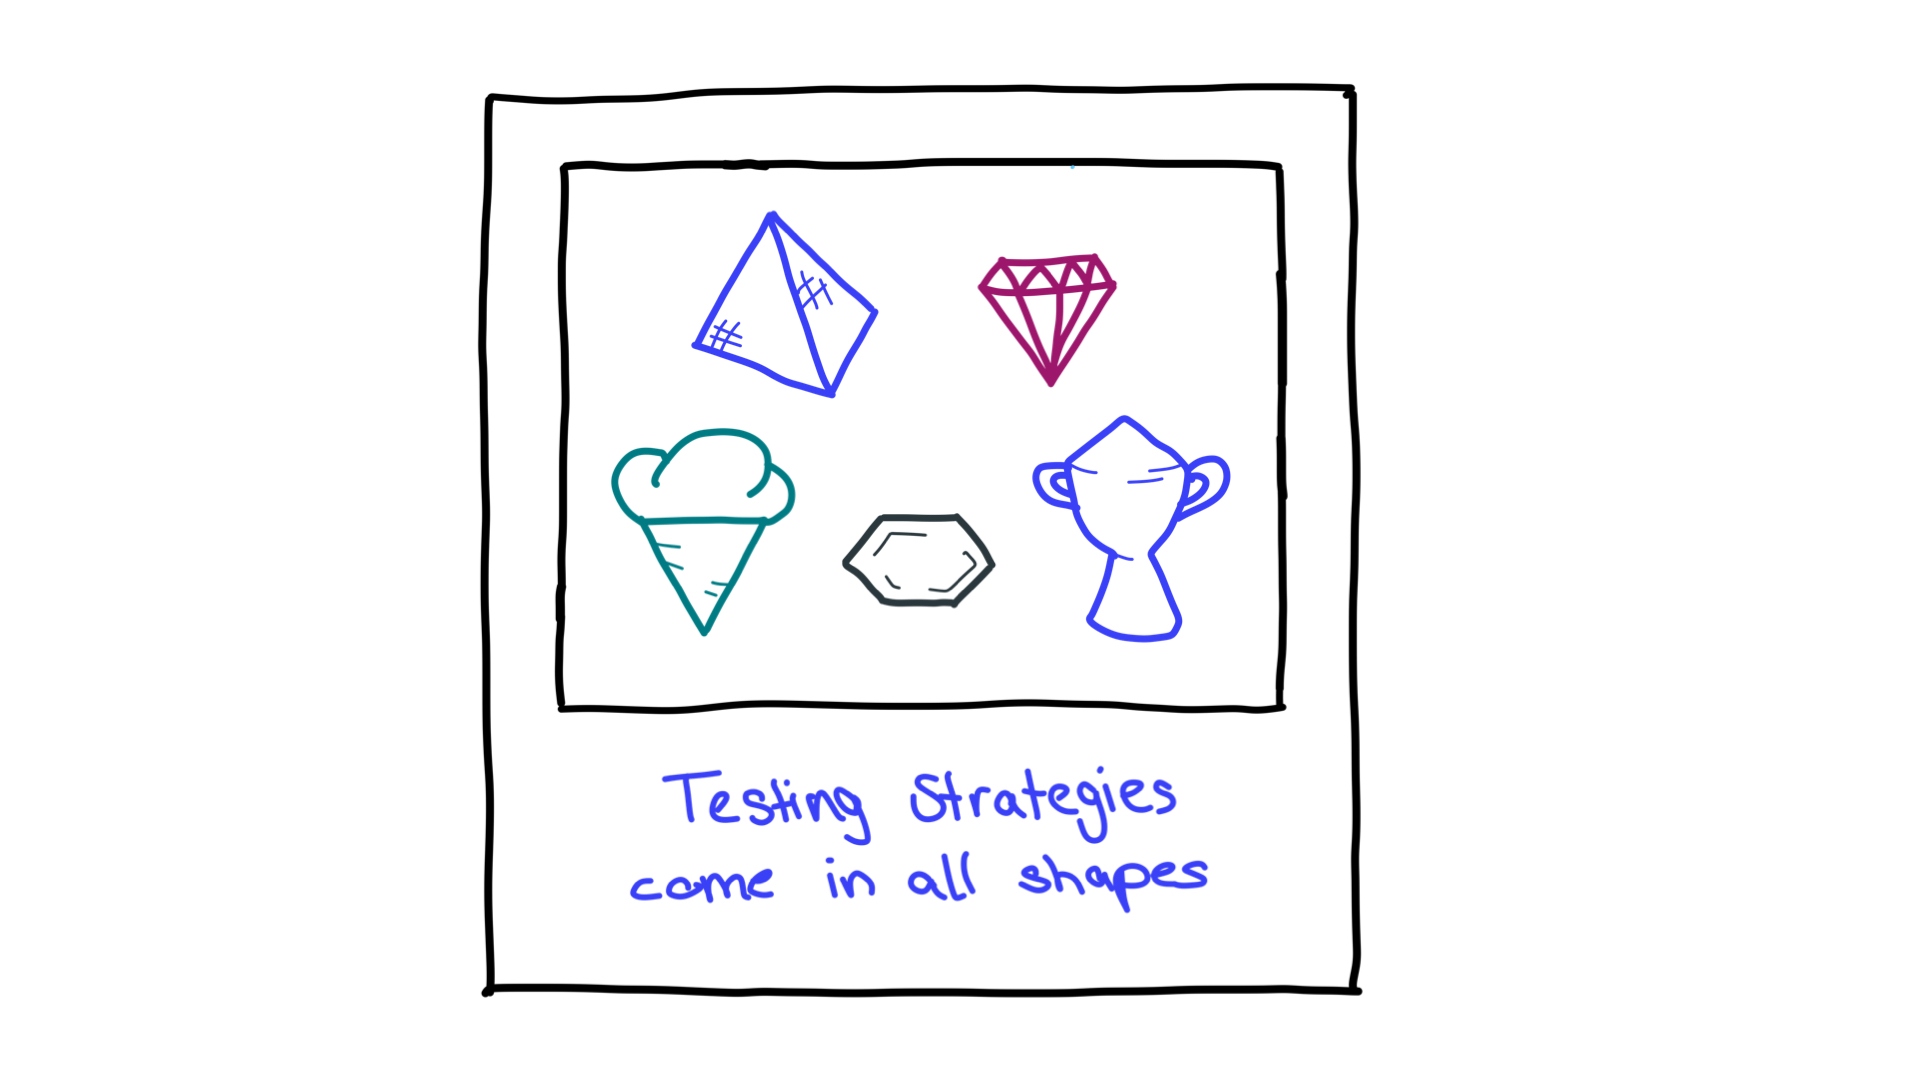 许多形状，如金字塔、钻石、冰锥、蜂巢和奖杯；代表测试策略。